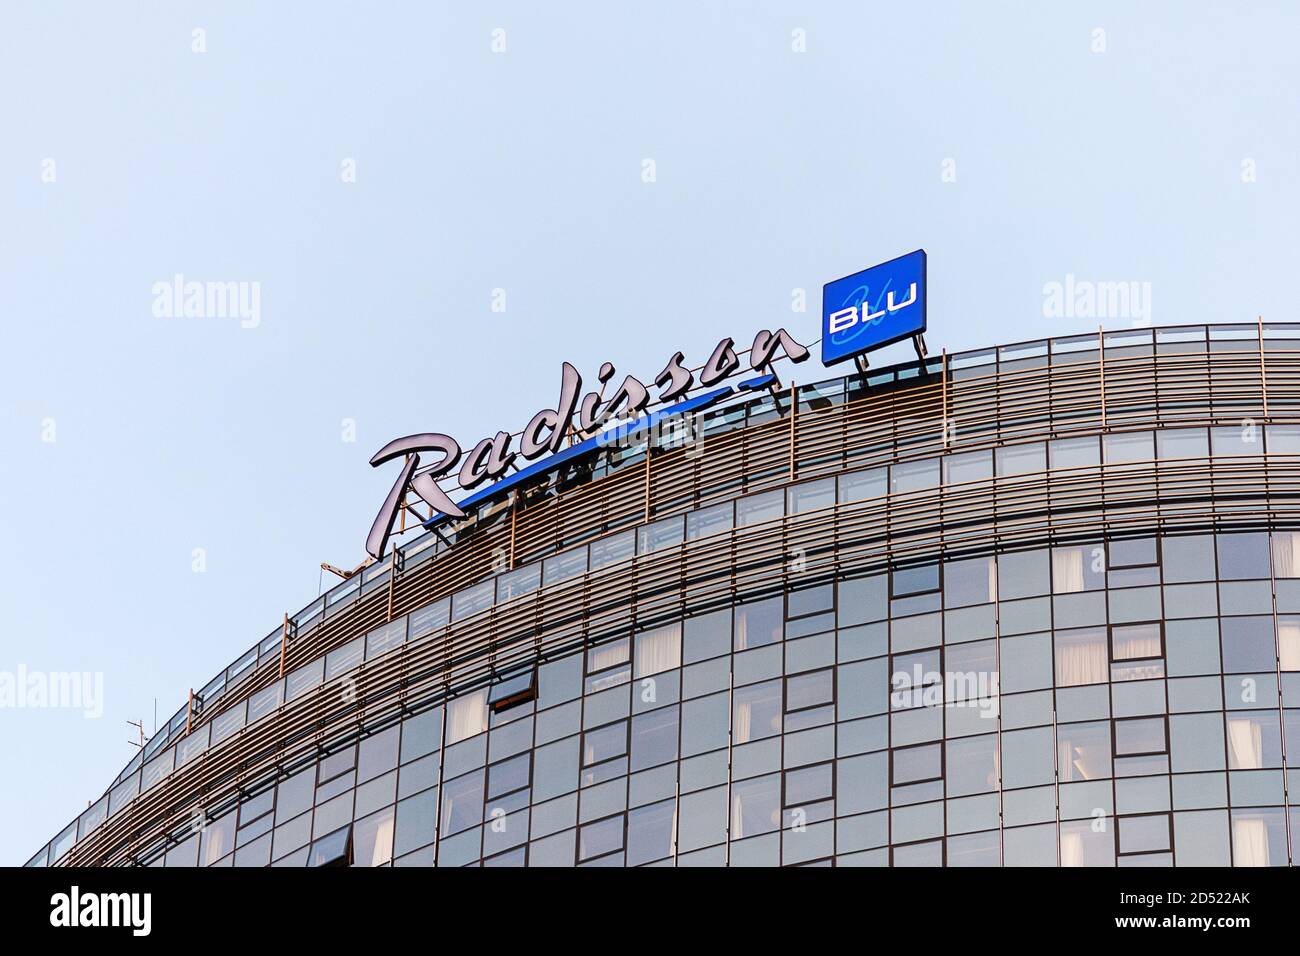 Il logo dell'hotel Radisson blu si trova sulla parte superiore del moderno edificio alberghiero, Mosca 05/10/2020 Foto Stock